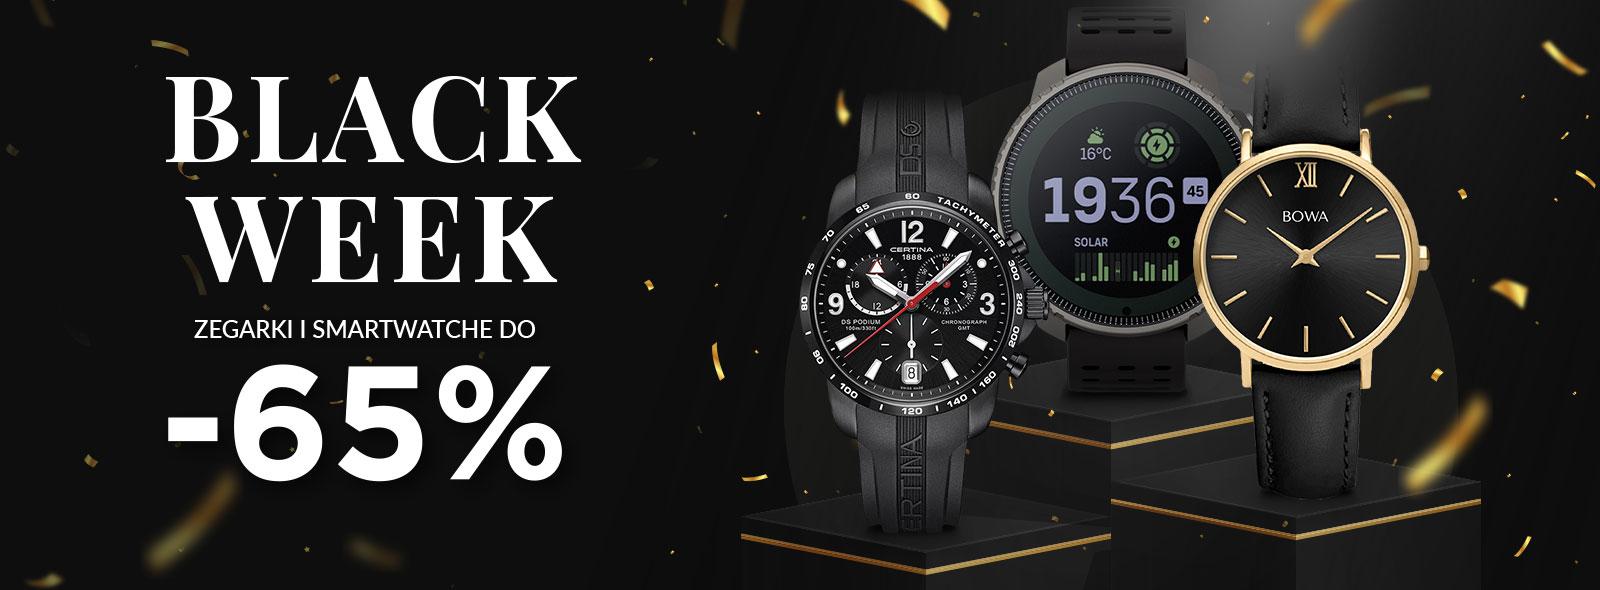 Black Week – zegarki w promocji do 65% taniej!